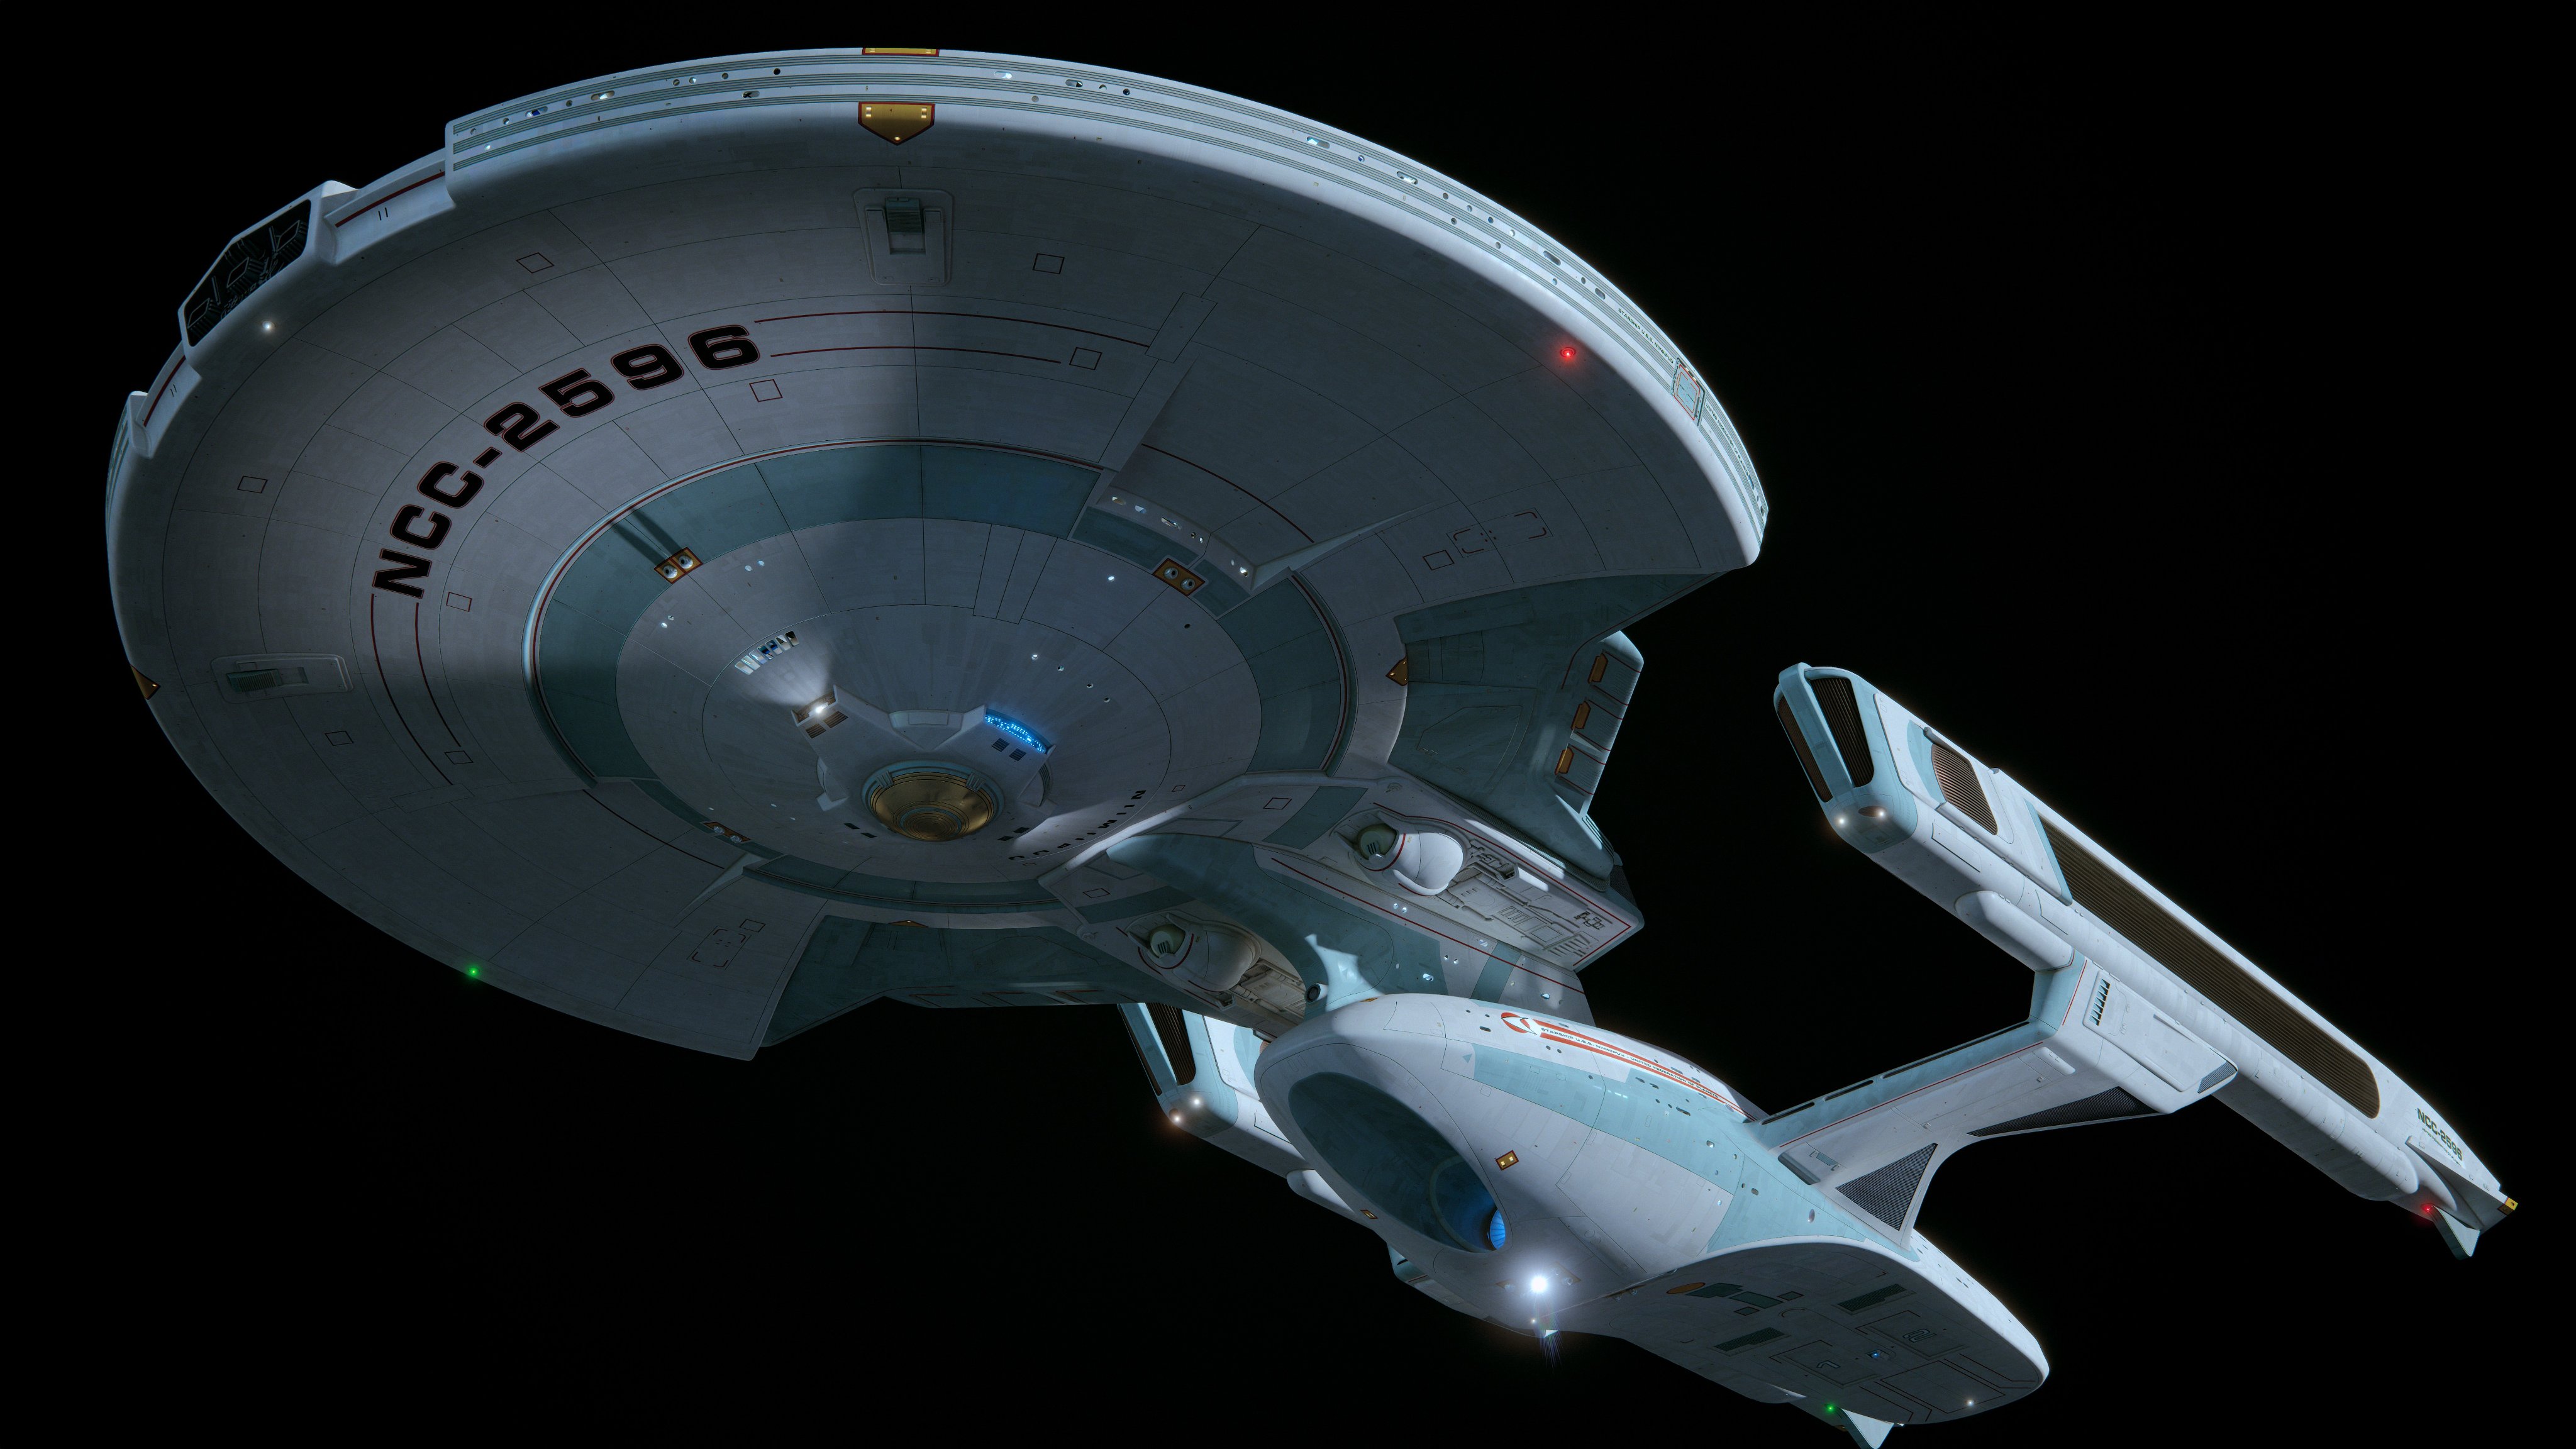 General 4096x2304 Star Trek Howie Day Shangri-La class spaceship science fiction TV series digital art simple background